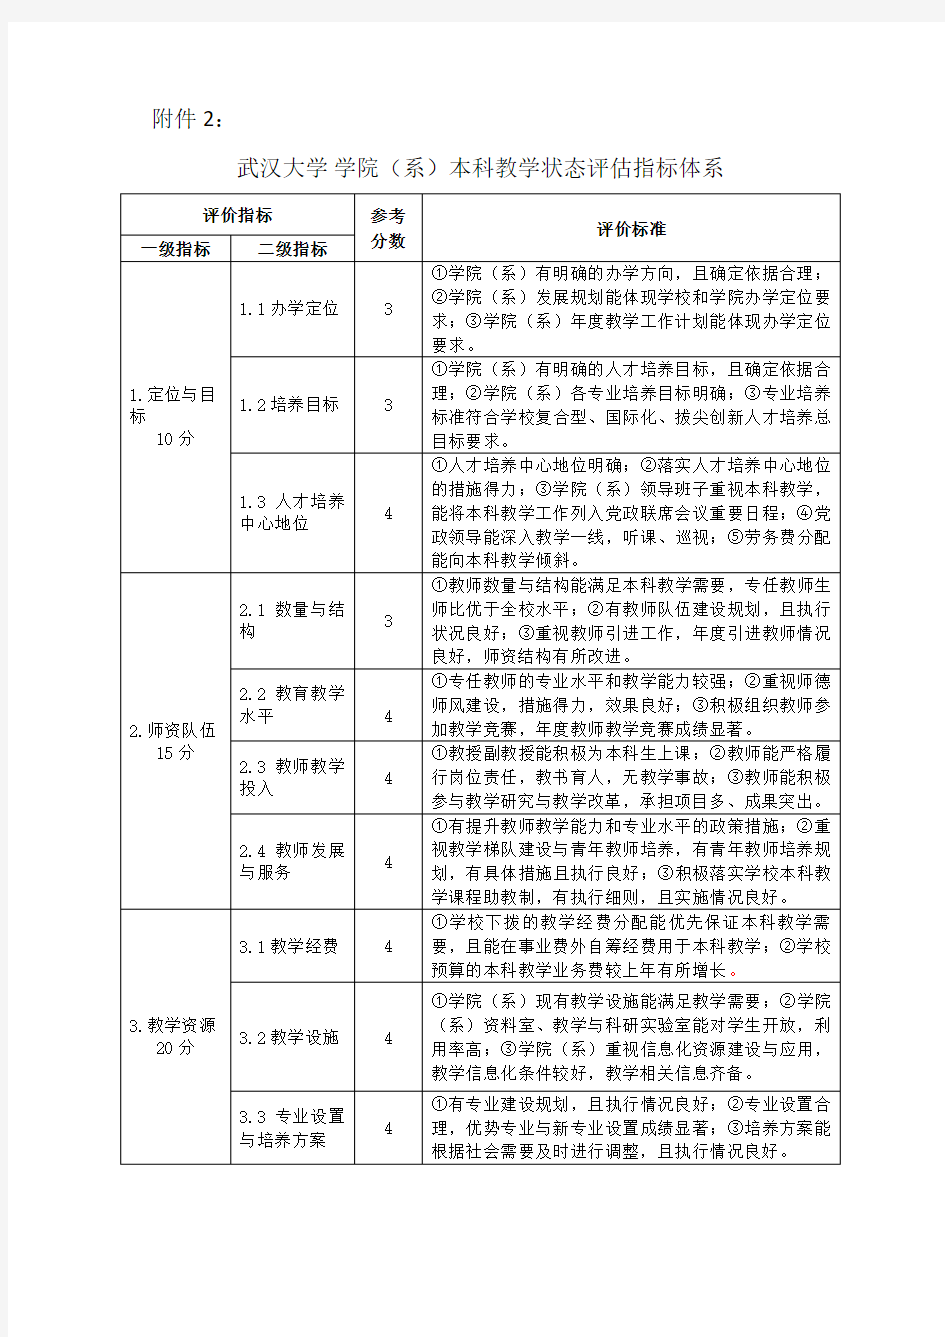 武汉大学学院系本科教学状态评估指标体系样本